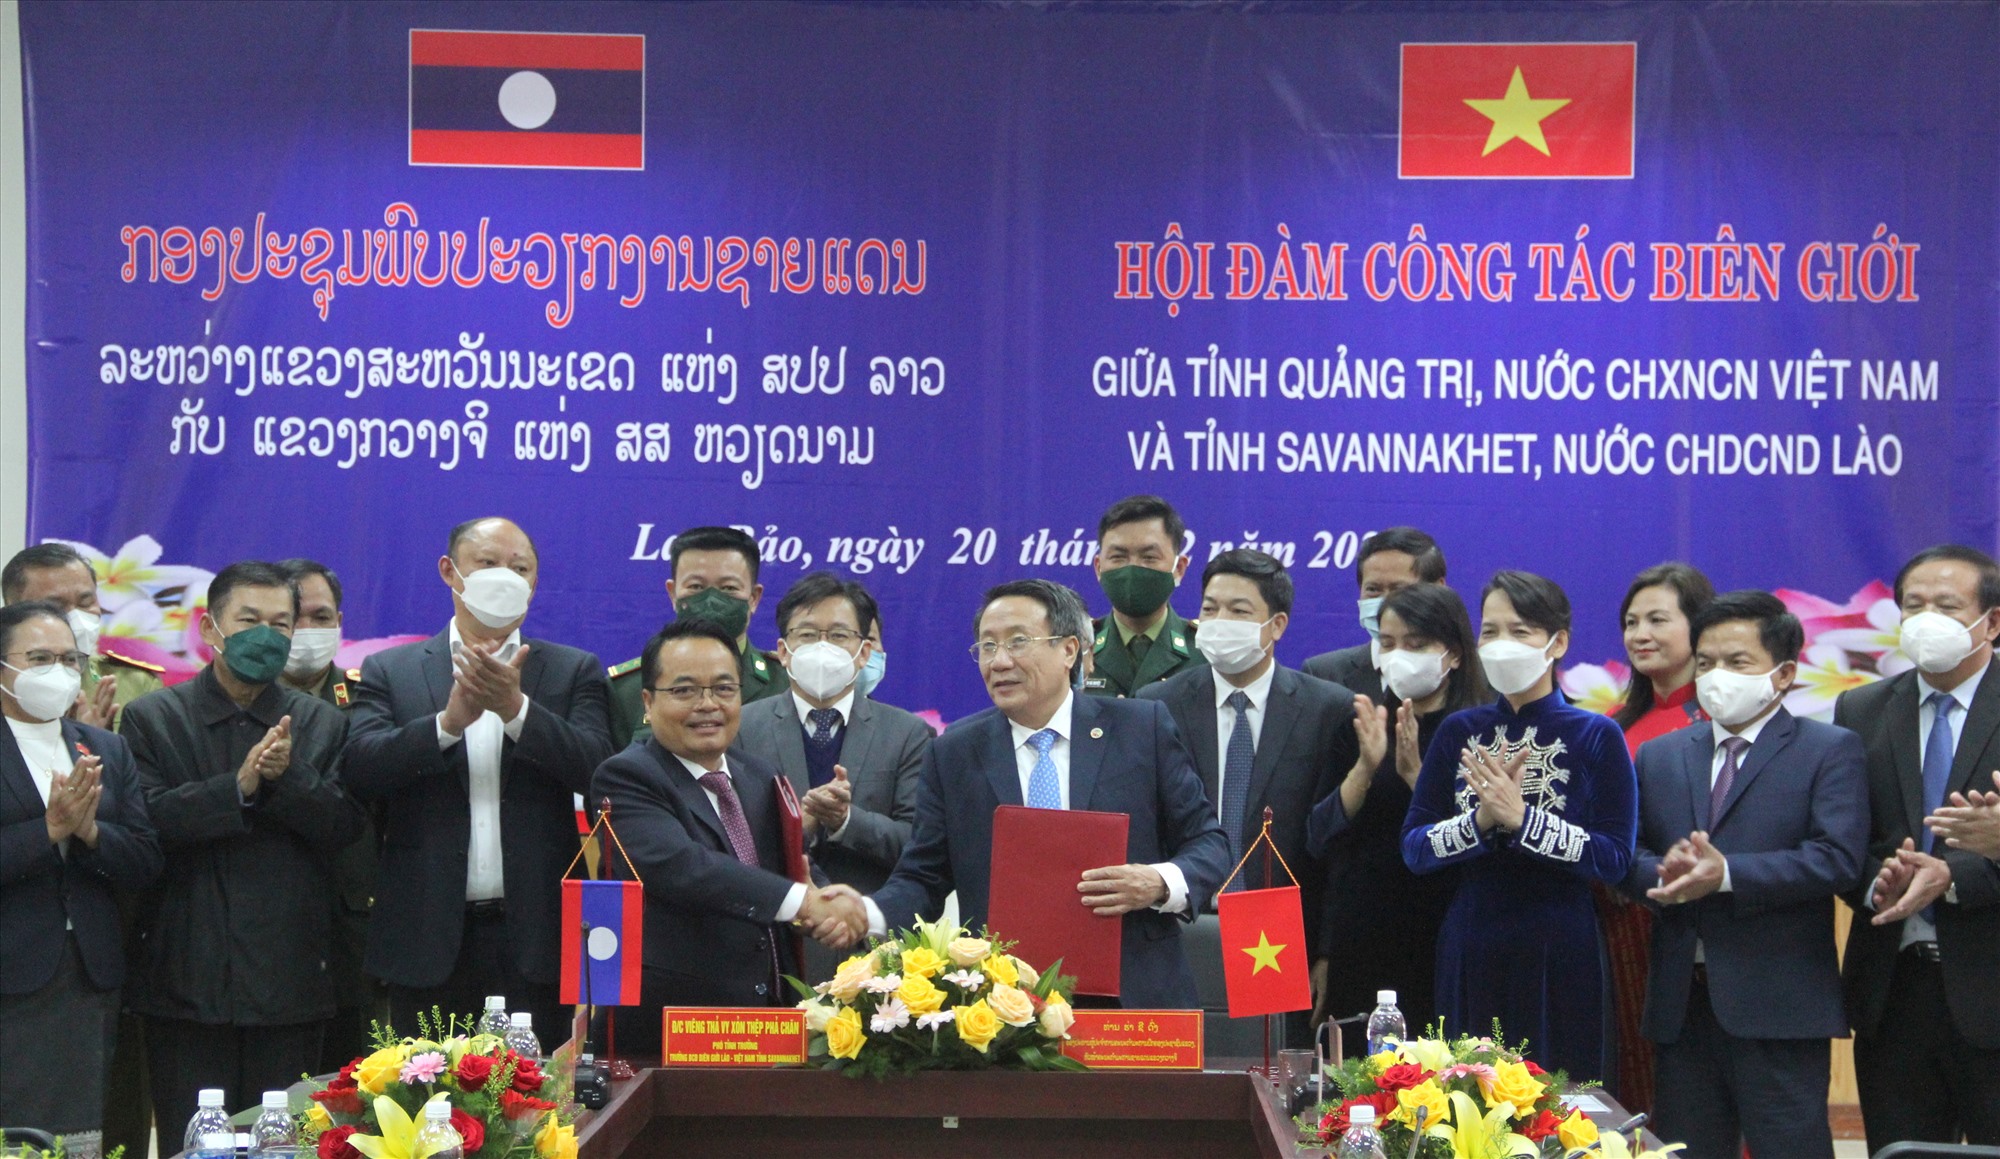 Lãnh đạo hai tỉnh Quảng Trị và Savannakhet ký kết các nội dung hợp tác tại buổi hội đàm​ - Ảnh: MĐ